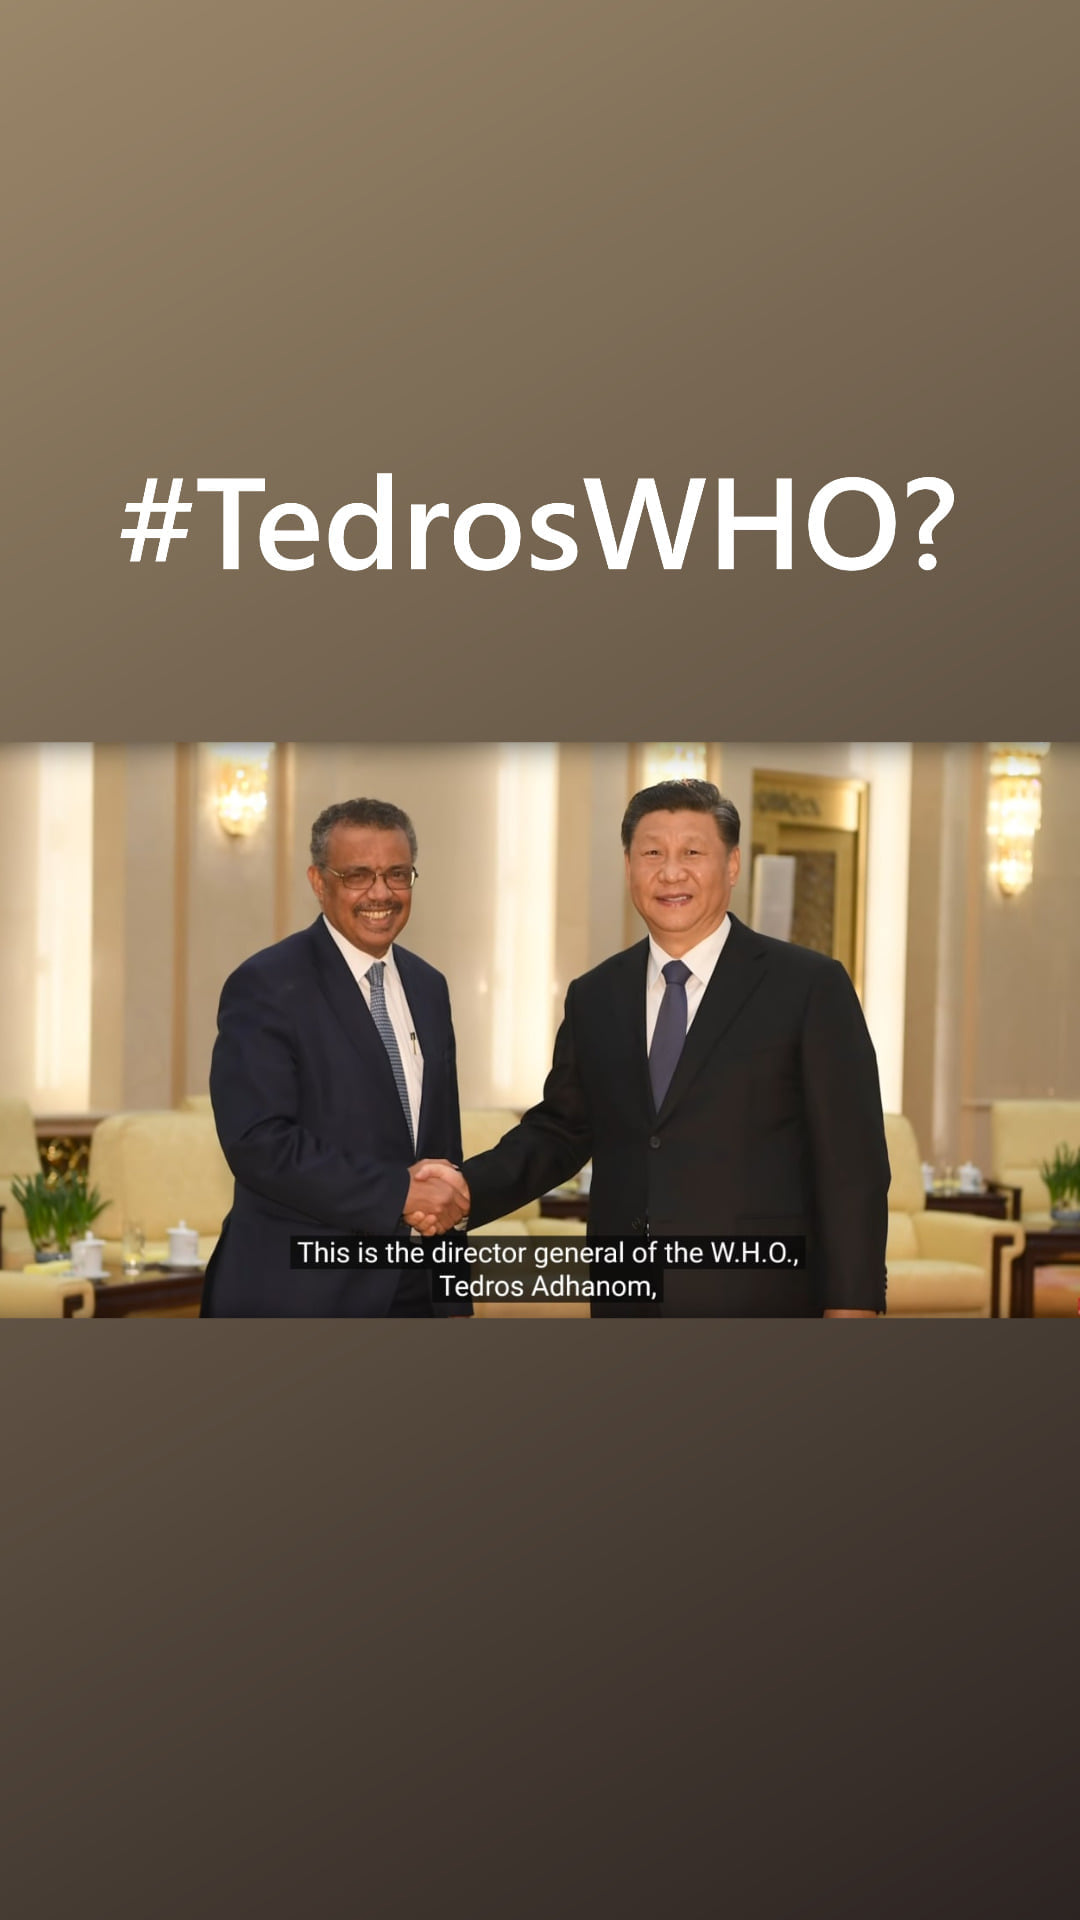 TEDROS WHO?